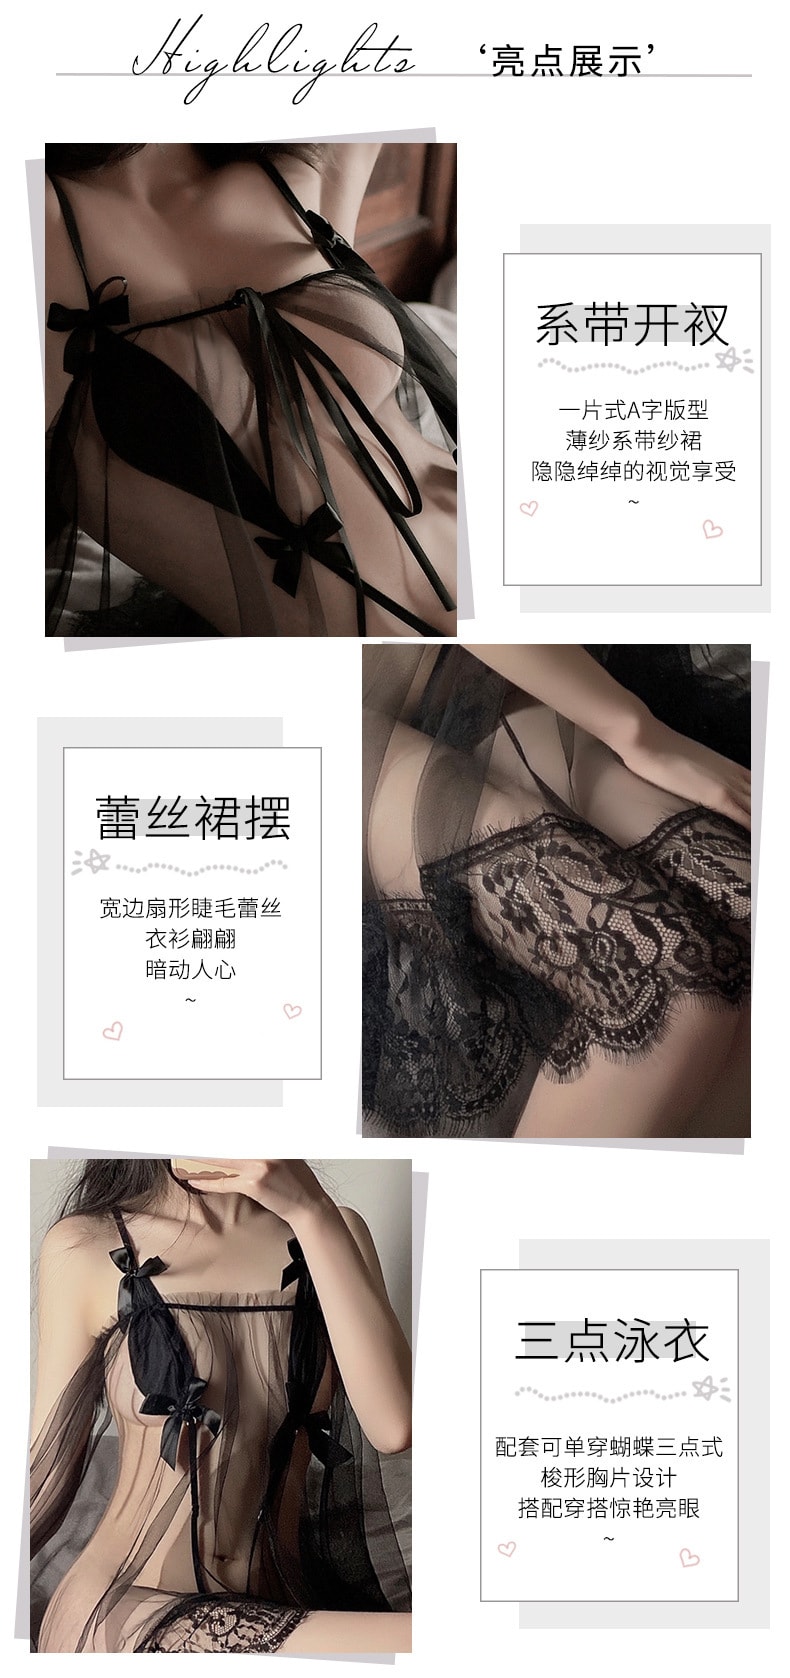 【中国直邮】曼烟 情趣内衣 性感透视网纱蕾丝吊带睡裙制服套装 均码 黑色